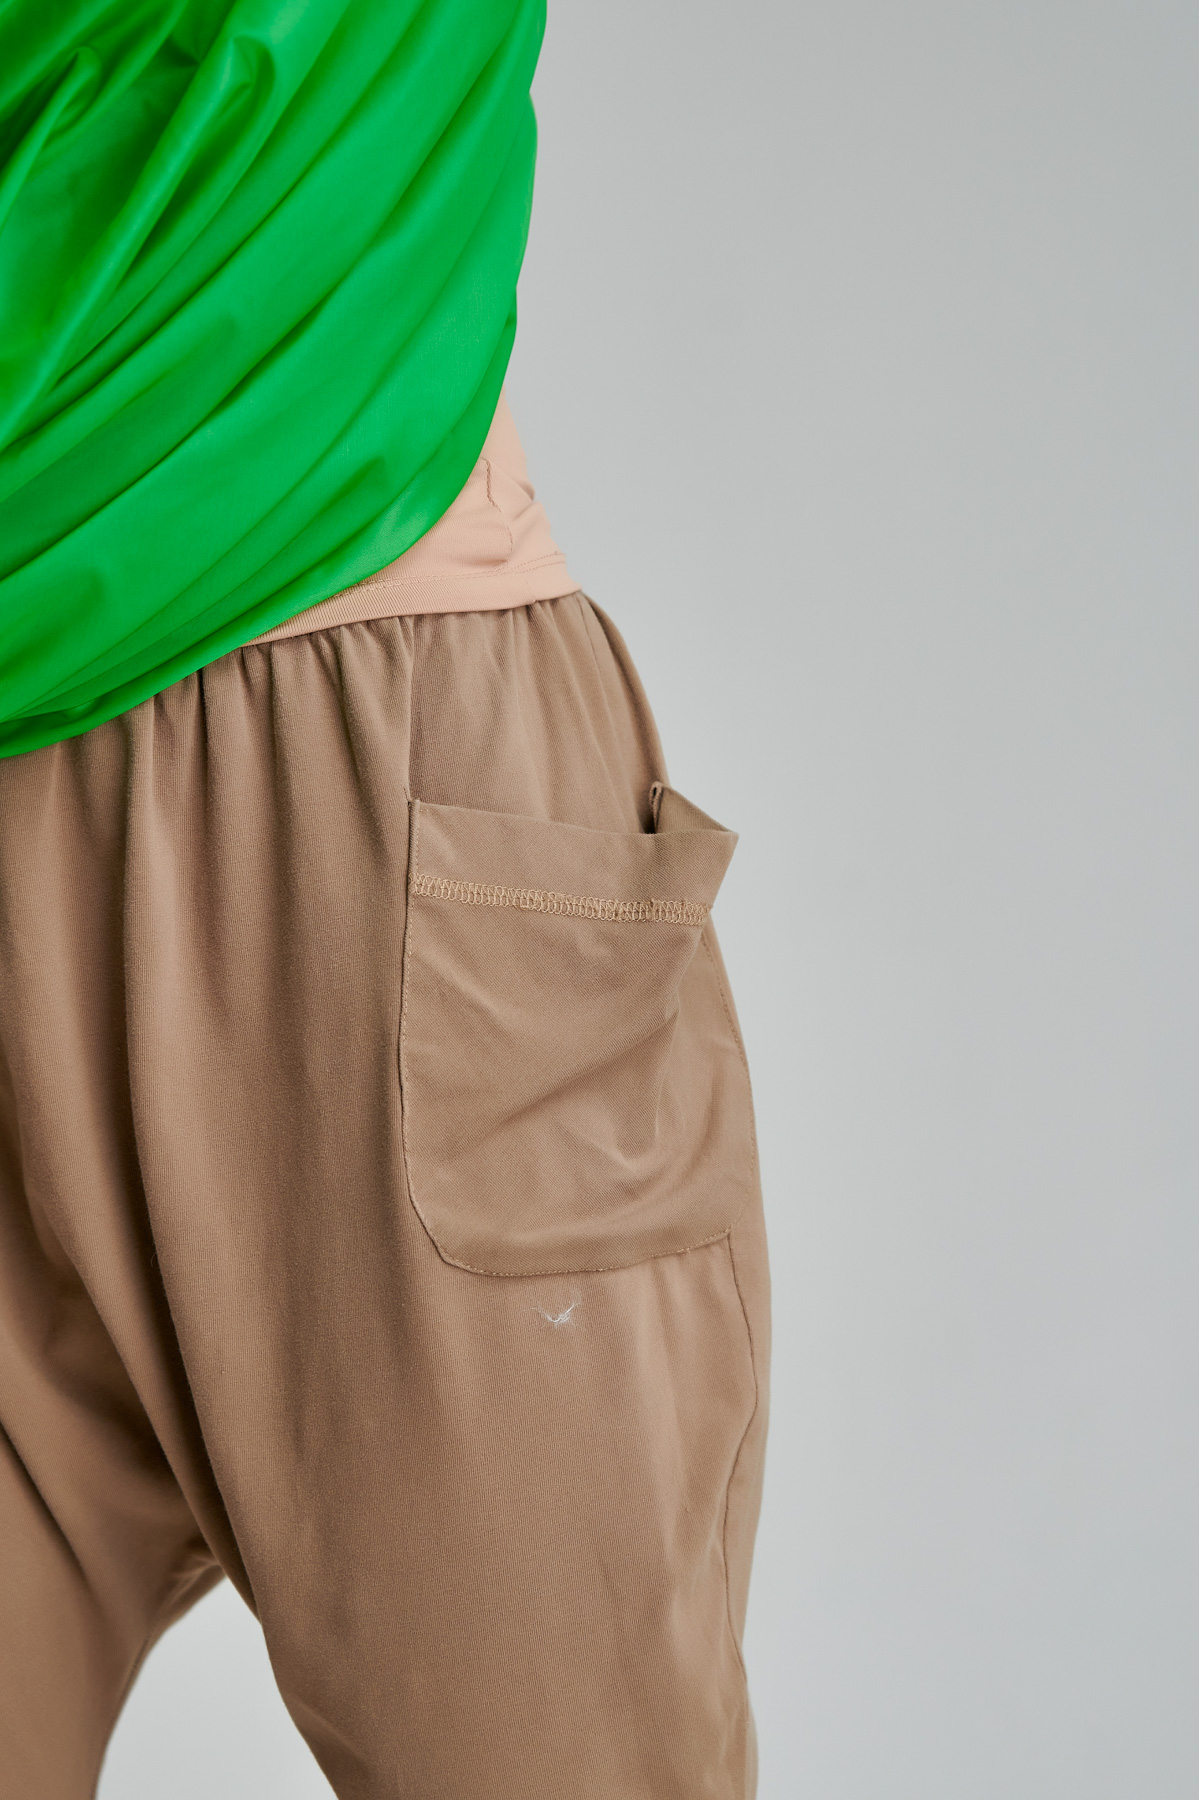 Pantalon scurt HOLLY din jerse cu turul usor lasat. Materiale naturale, design unicat, cu broderie si aplicatii handmade